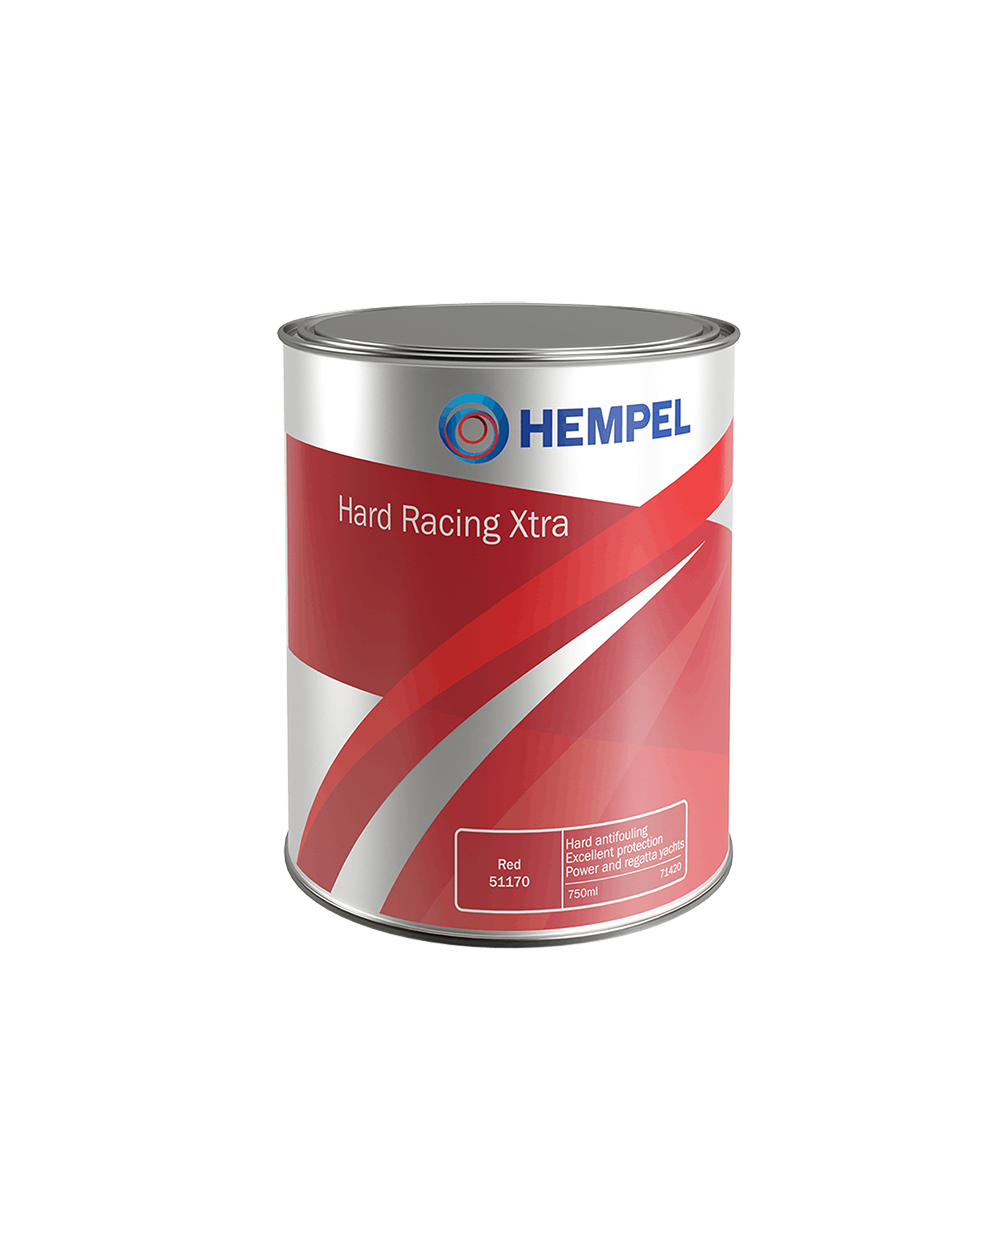 Se Hempel Hard Racing Xtra - Red - 2,5 L hos Picment.dk